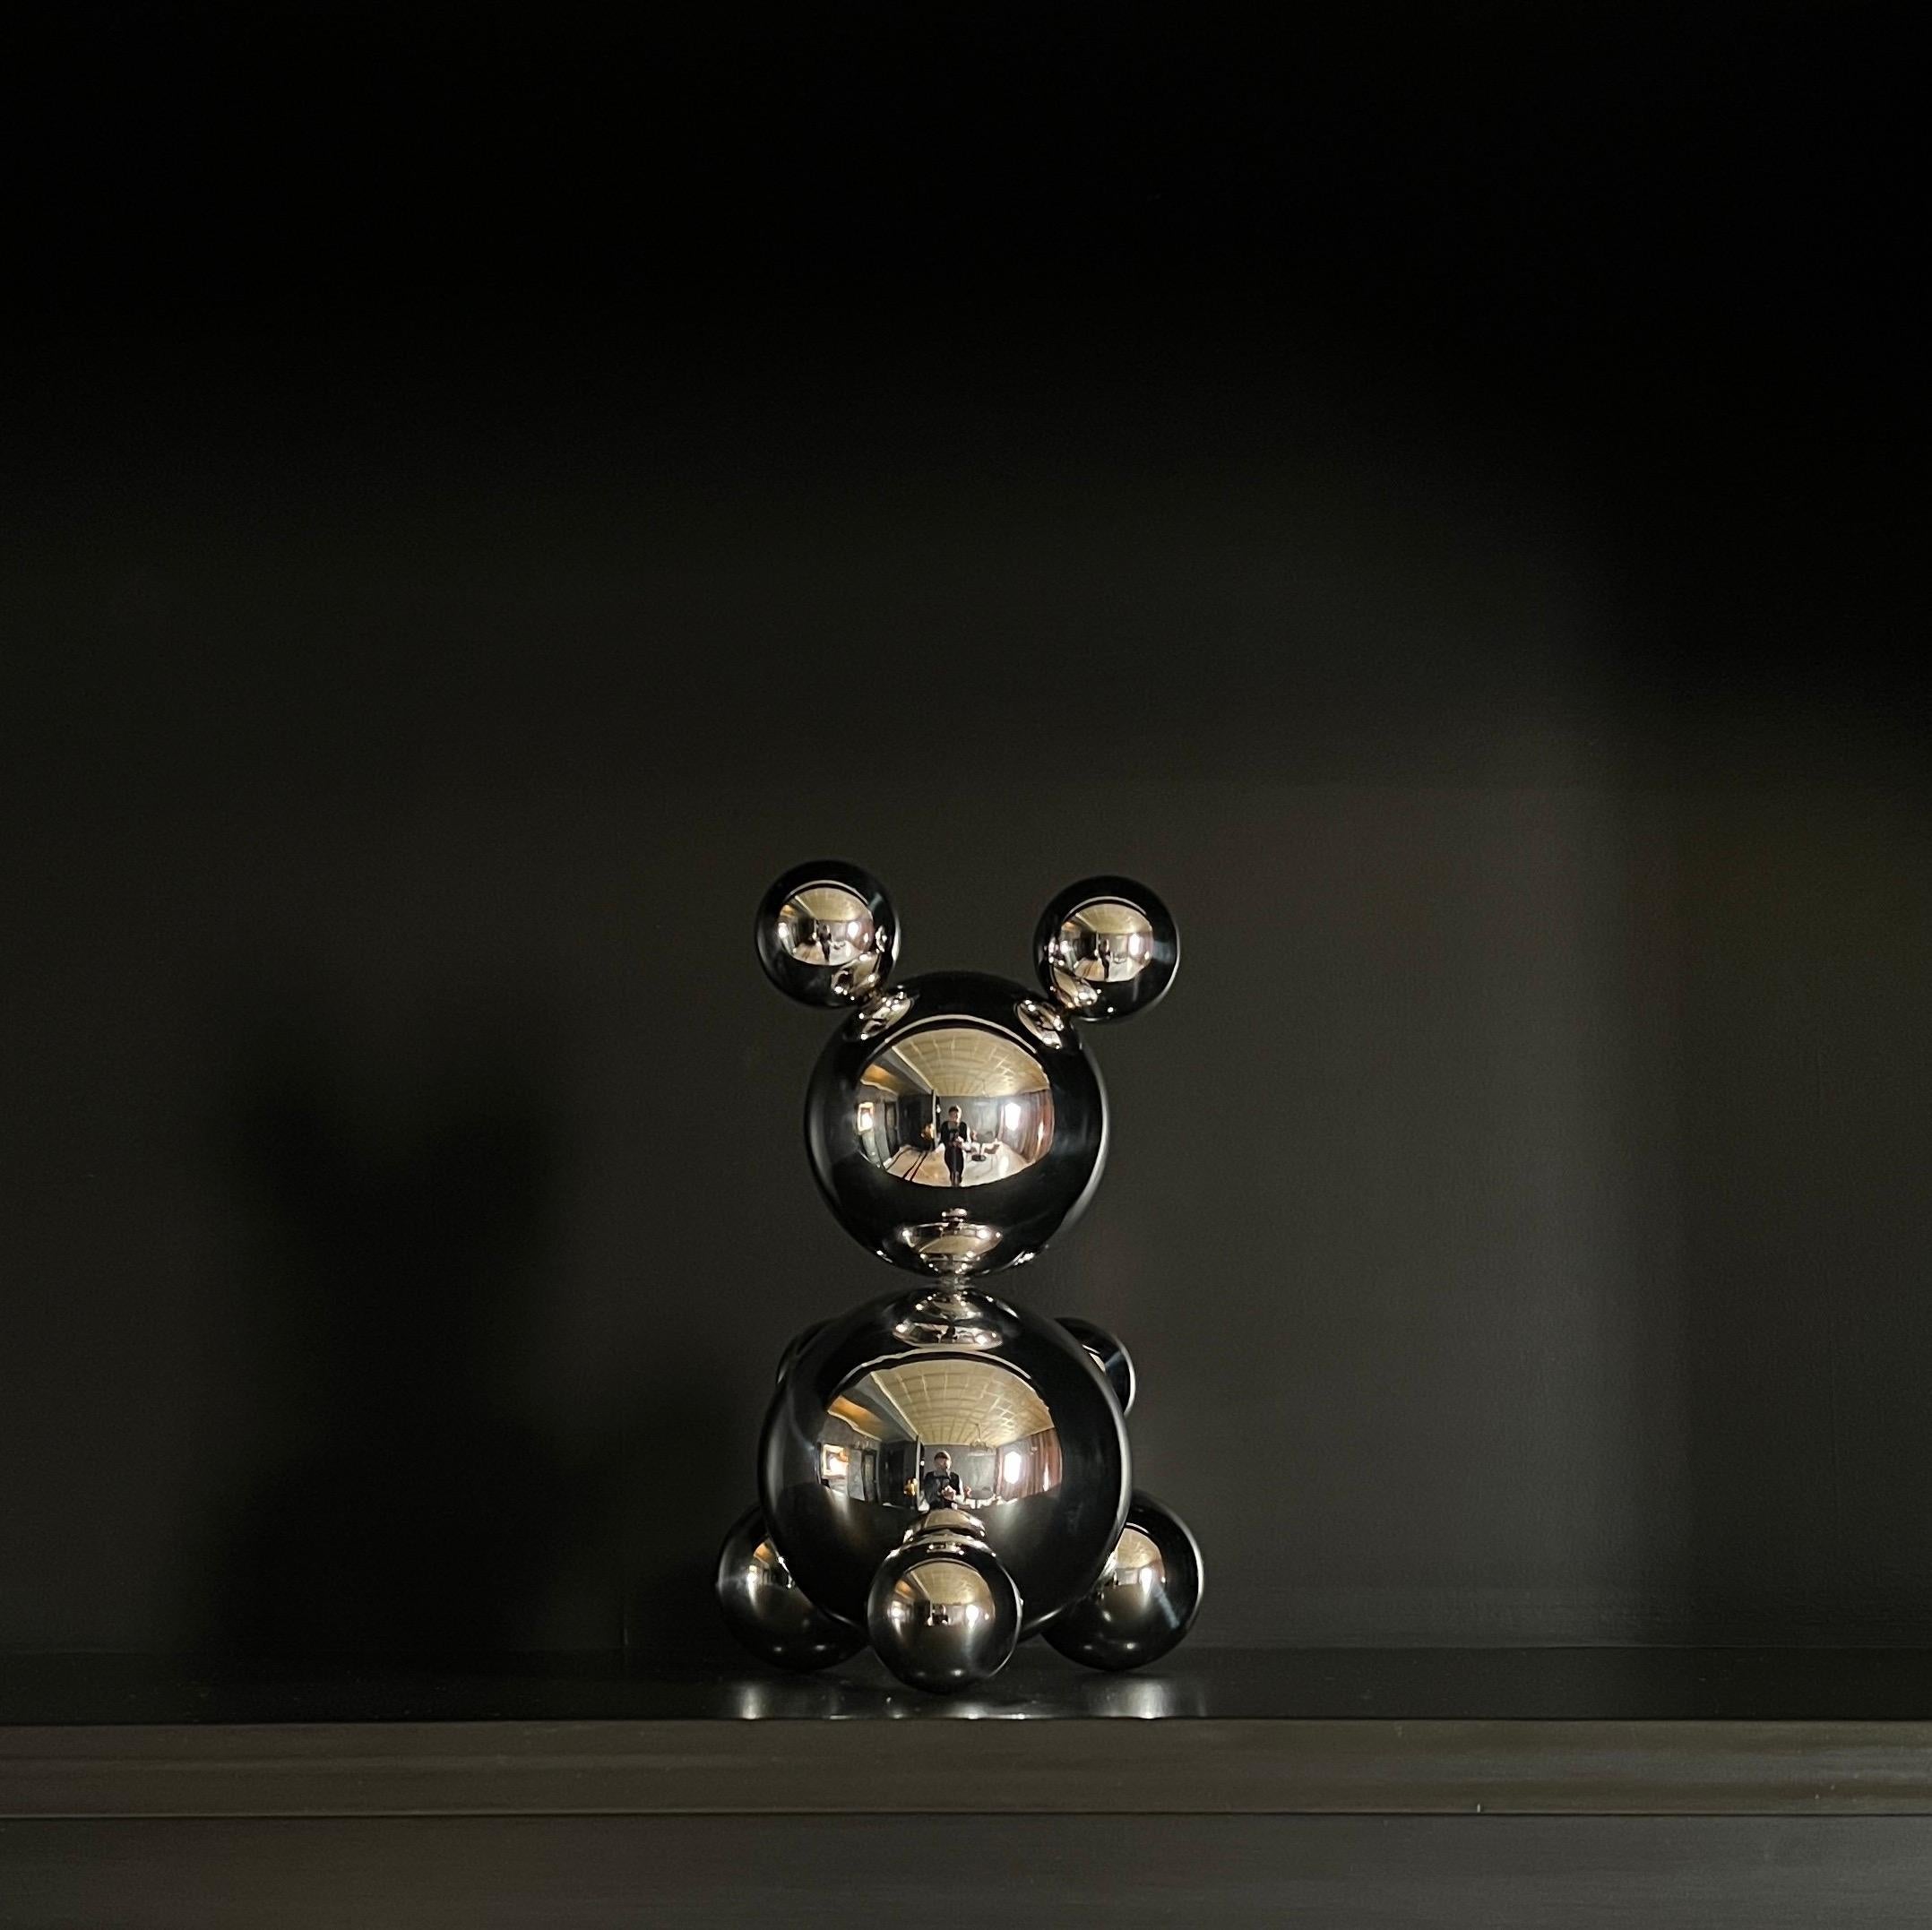 Small Stainless Steel Bear 'Sophia' Sculpture Minimalistic Animal 4